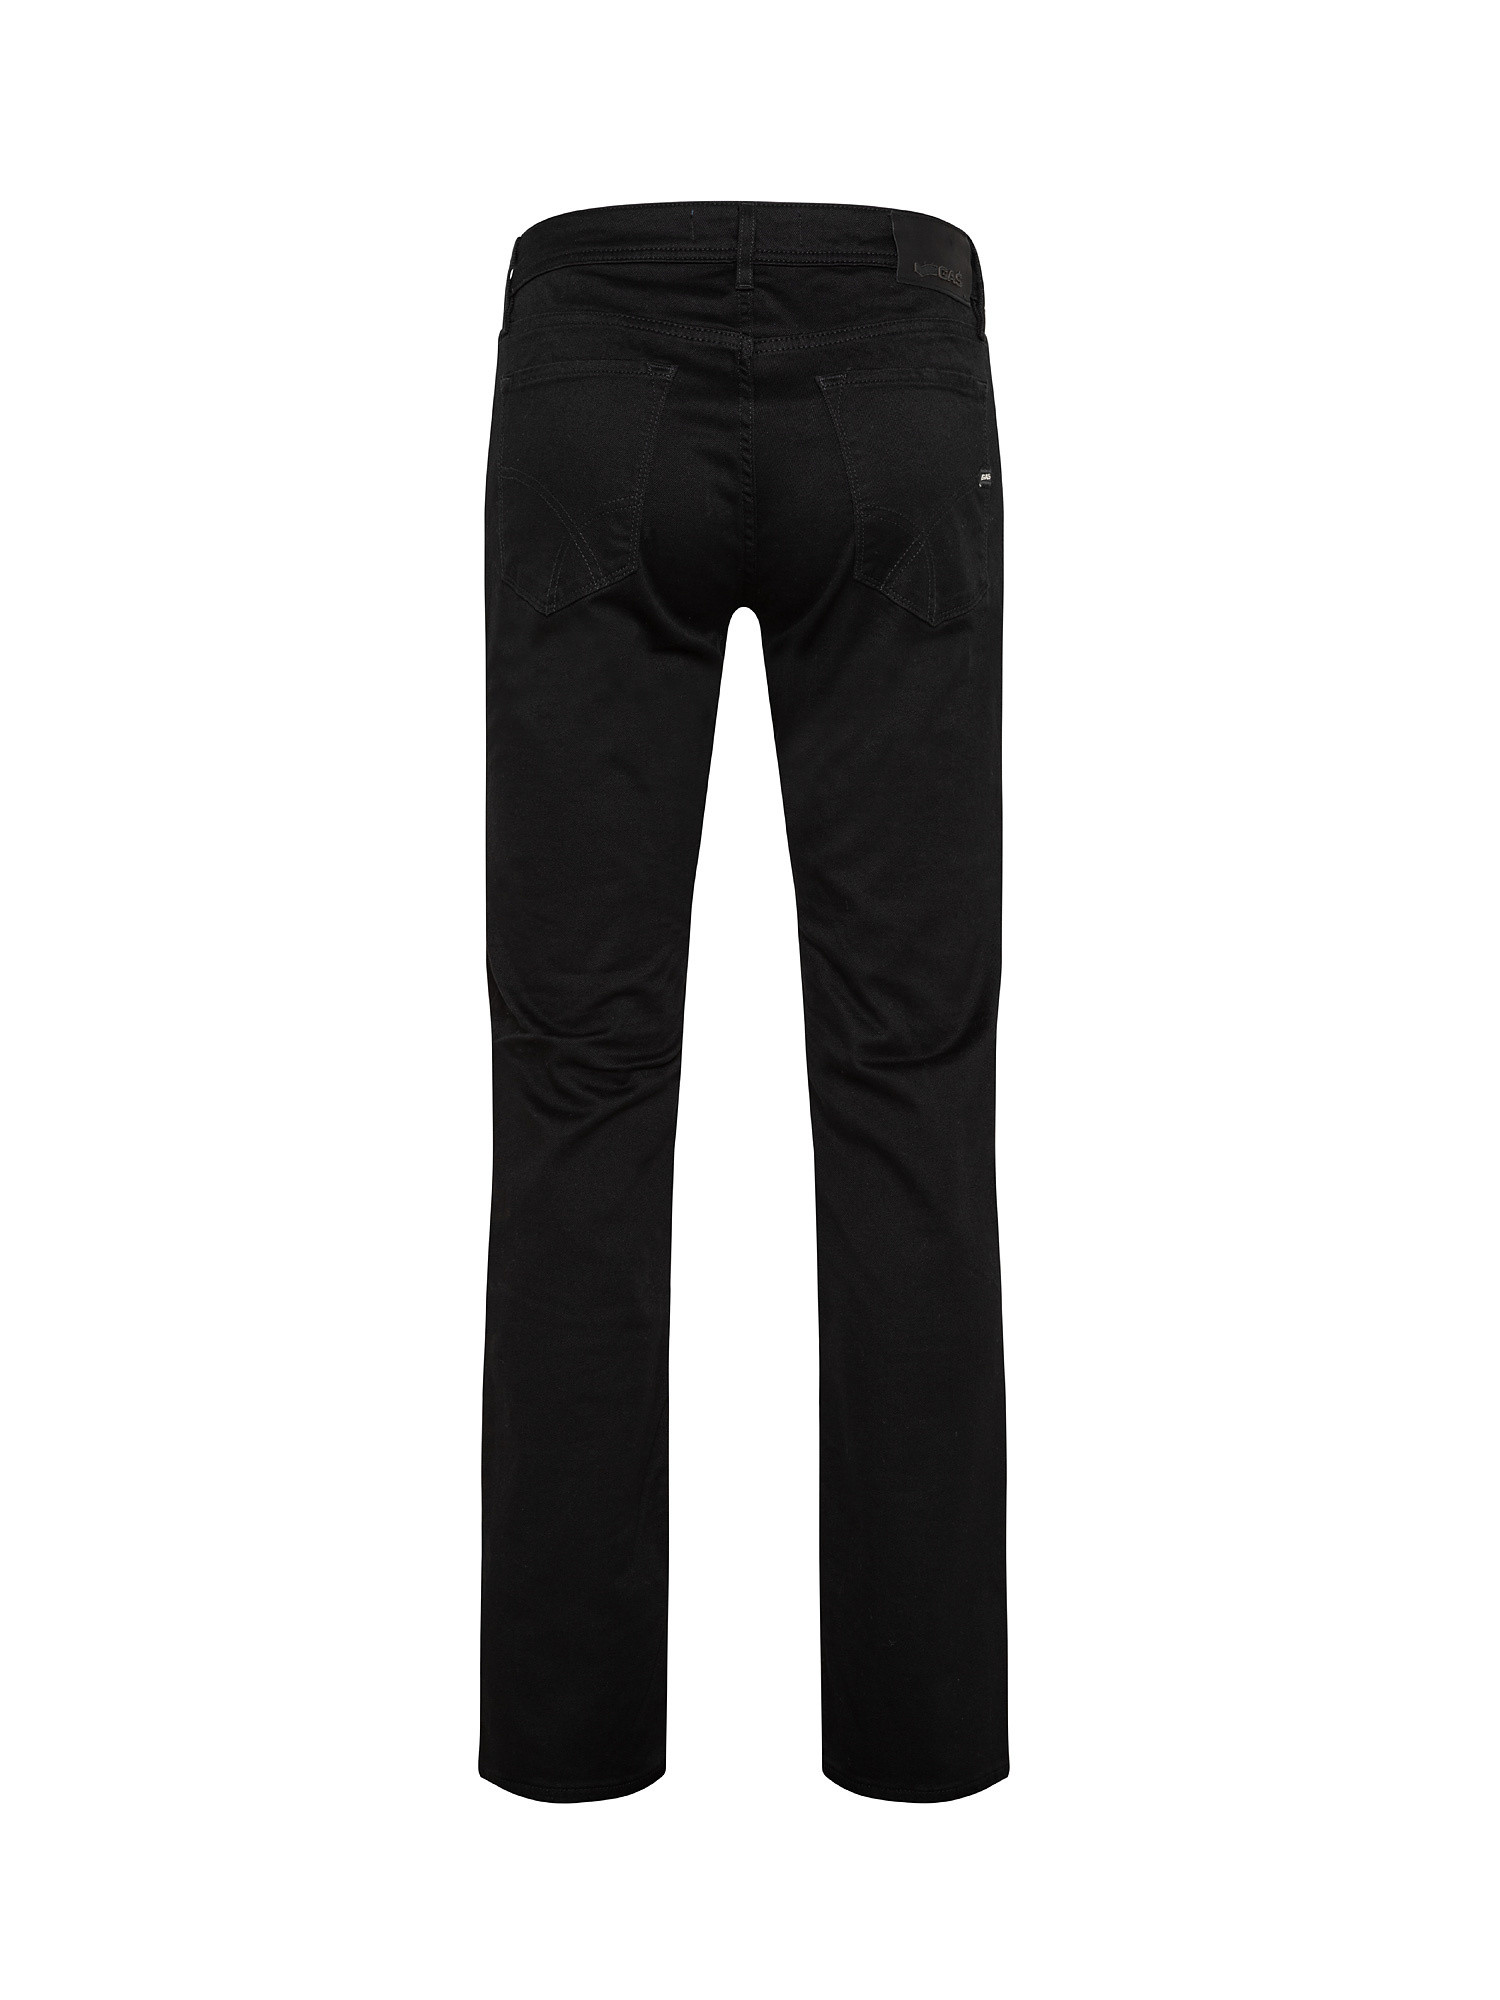 Jeans slim  elasticizzati, Denim, large image number 1